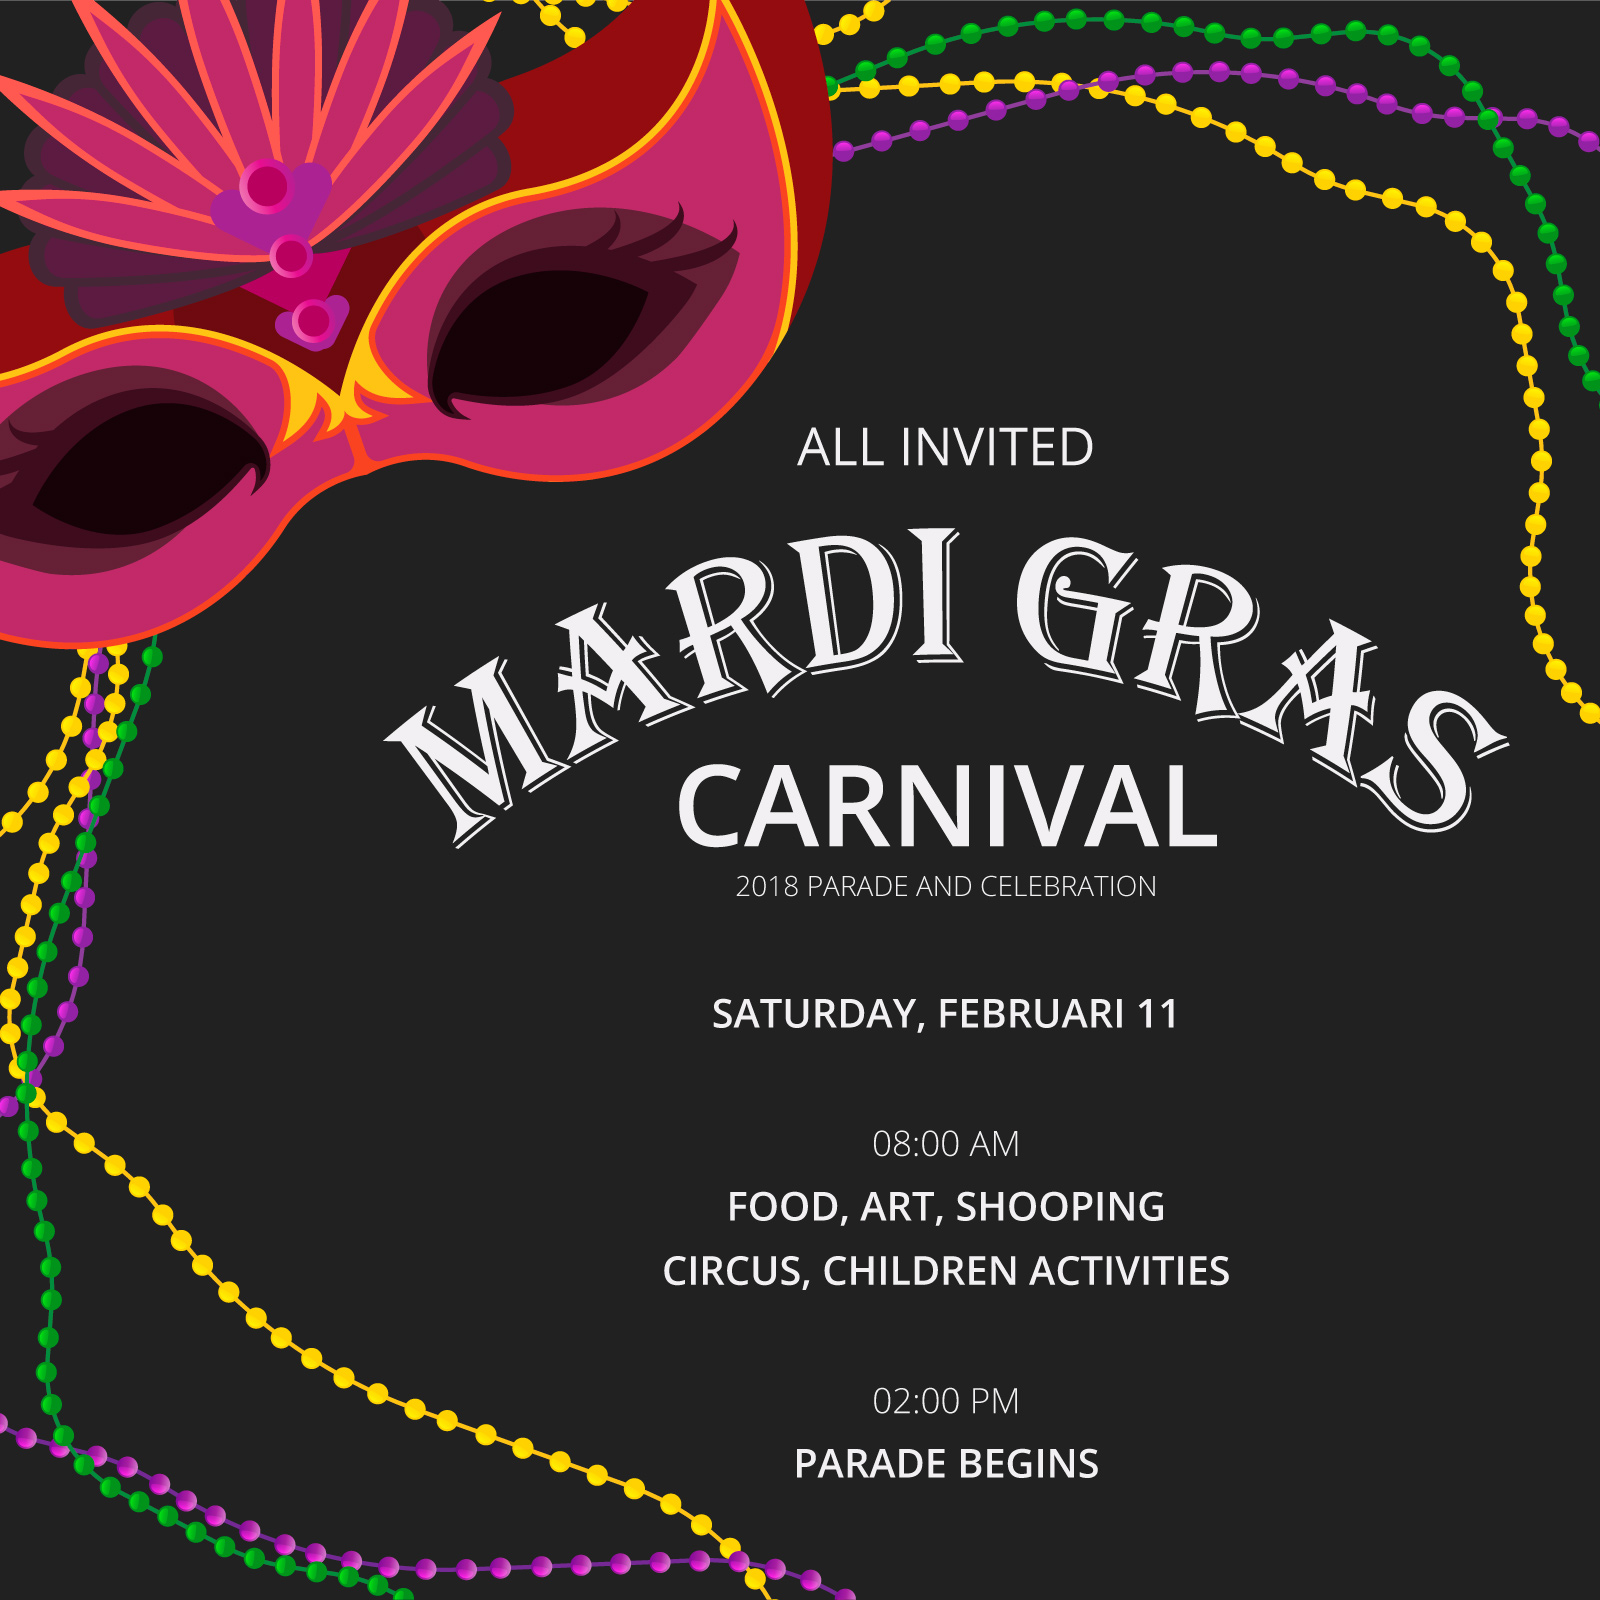 Mardi Gras Invitation Template Free